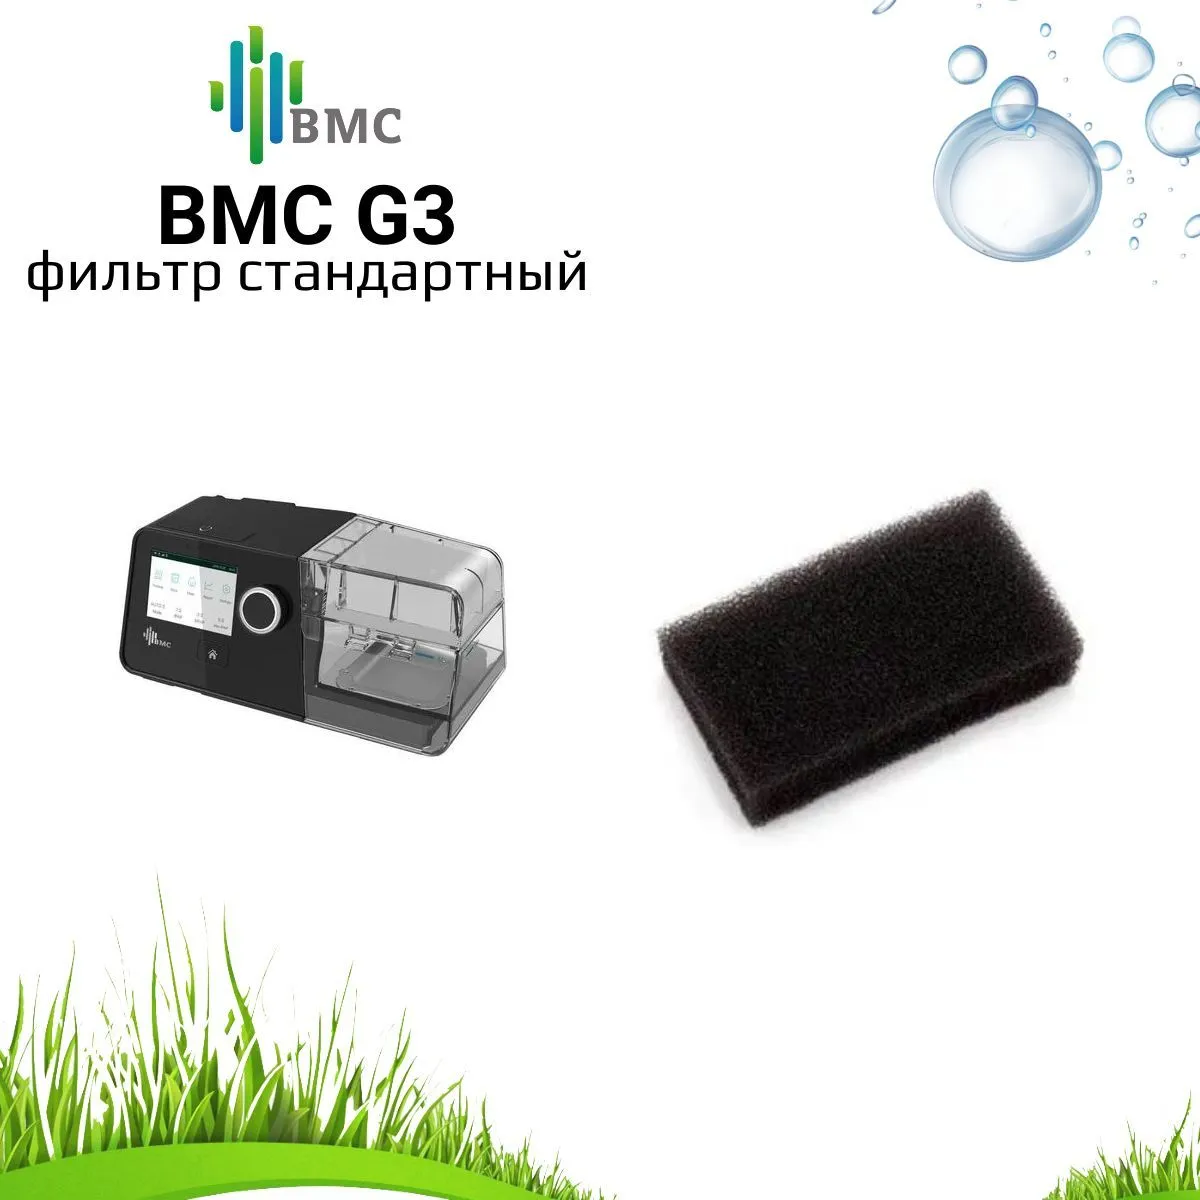 BMC G3 фильтр стандартный воздушный (5 штук) для сипап